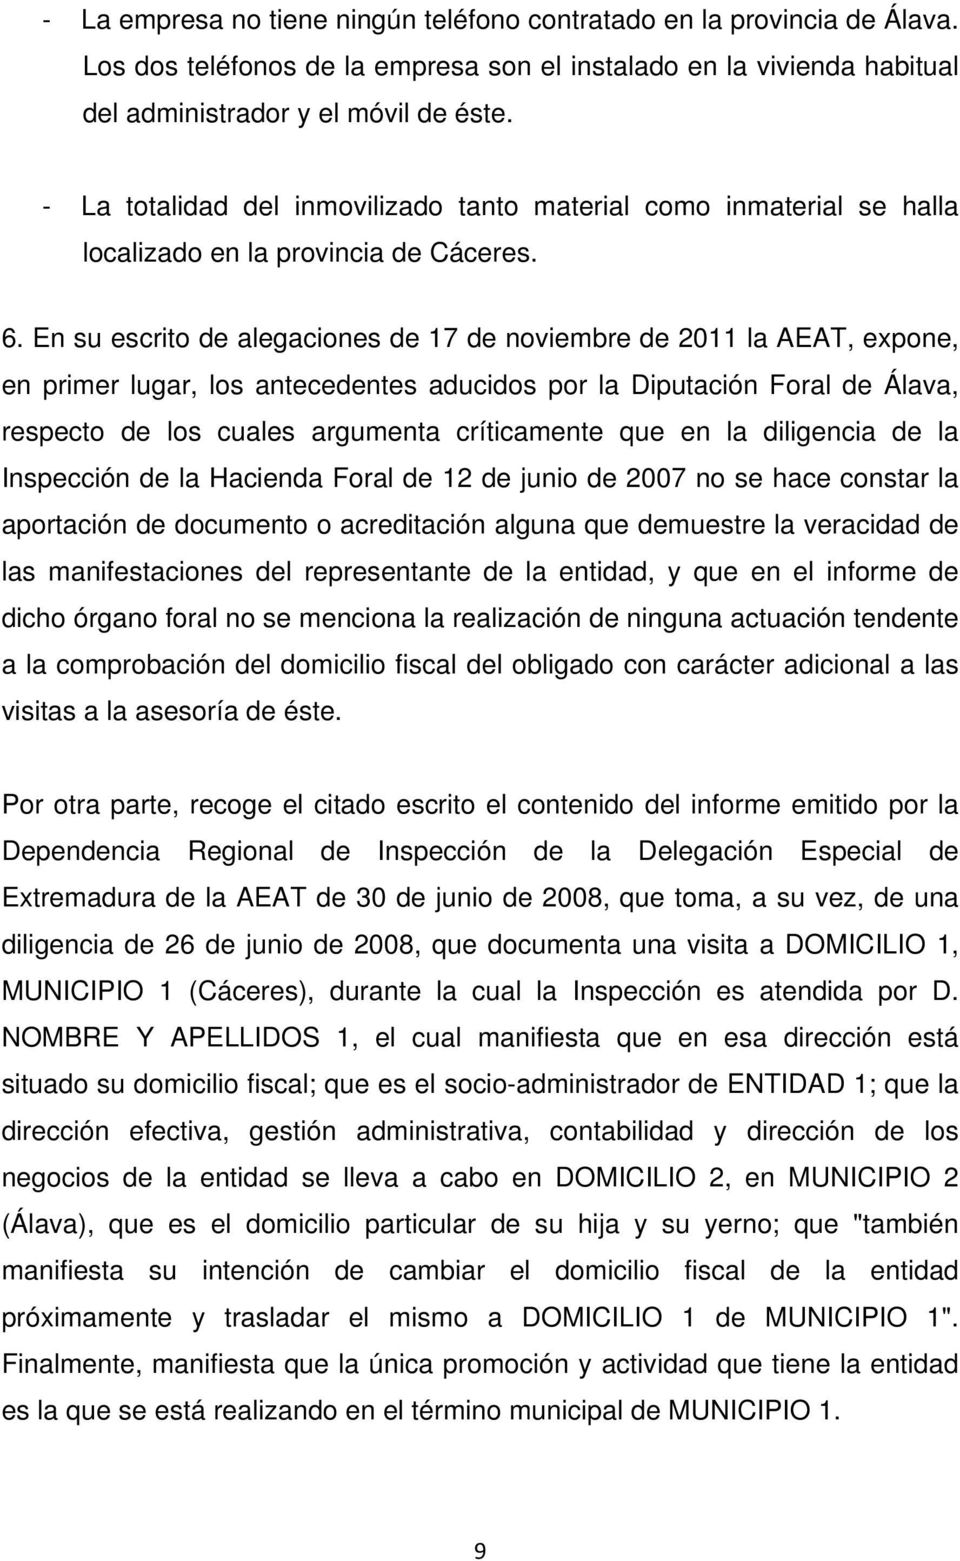 En su escrito de alegaciones de 17 de noviembre de 2011 la AEAT, expone, en primer lugar, los antecedentes aducidos por la Diputación Foral de Álava, respecto de los cuales argumenta críticamente que